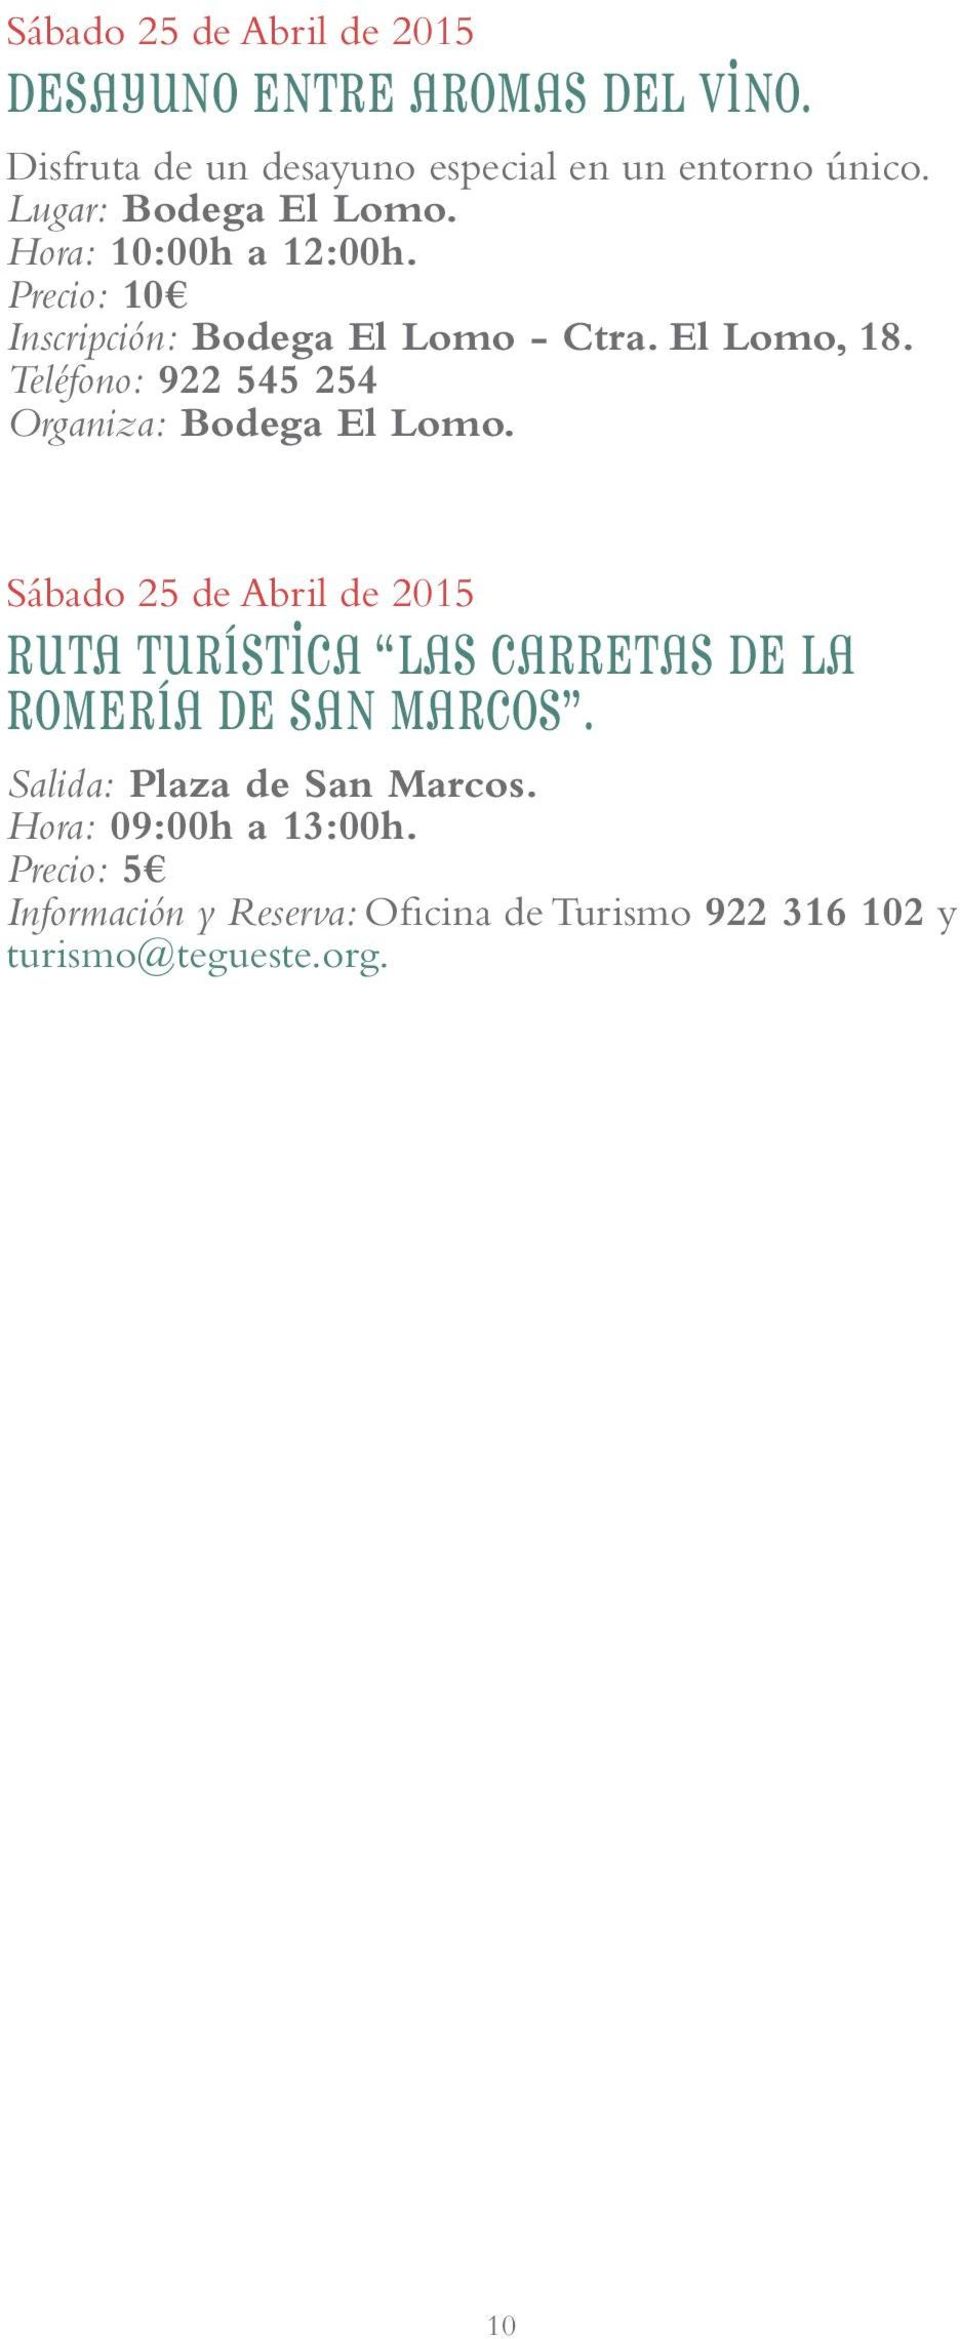 Teléfono: 922 545 254 Organiza: Bodega El Lomo.